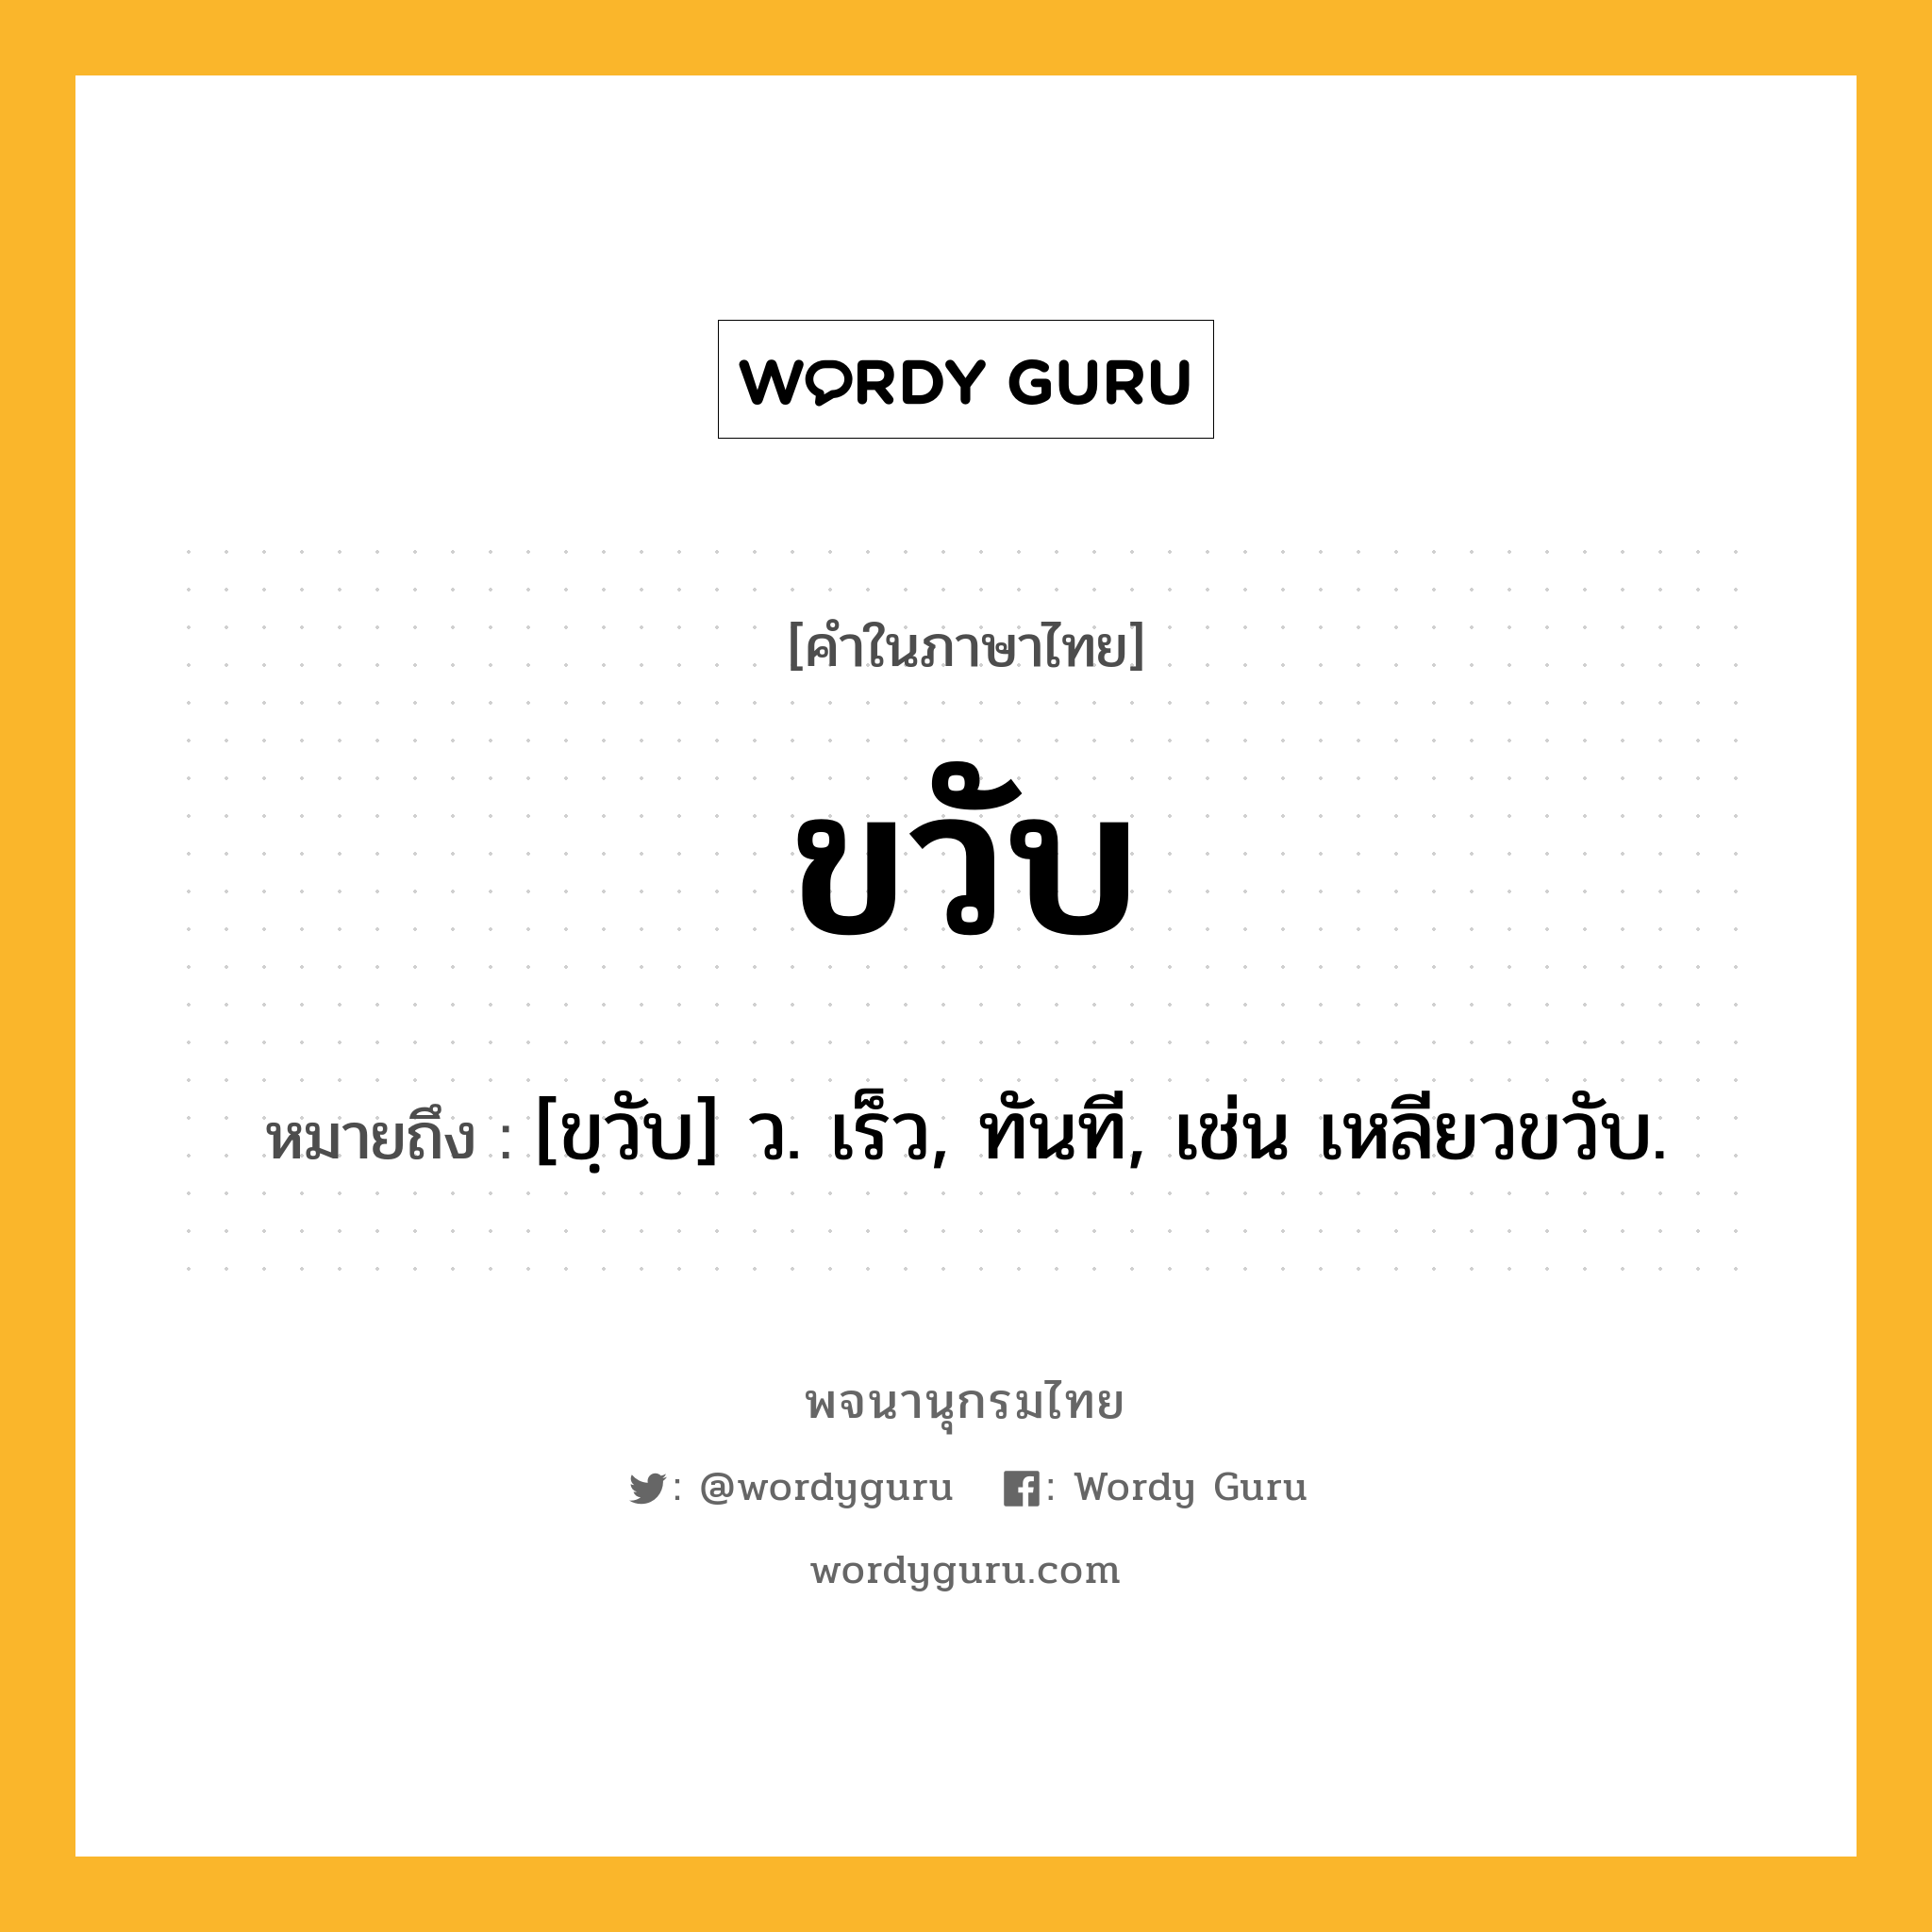 ขวับ หมายถึงอะไร?, คำในภาษาไทย ขวับ หมายถึง [ขฺวับ] ว. เร็ว, ทันที, เช่น เหลียวขวับ.